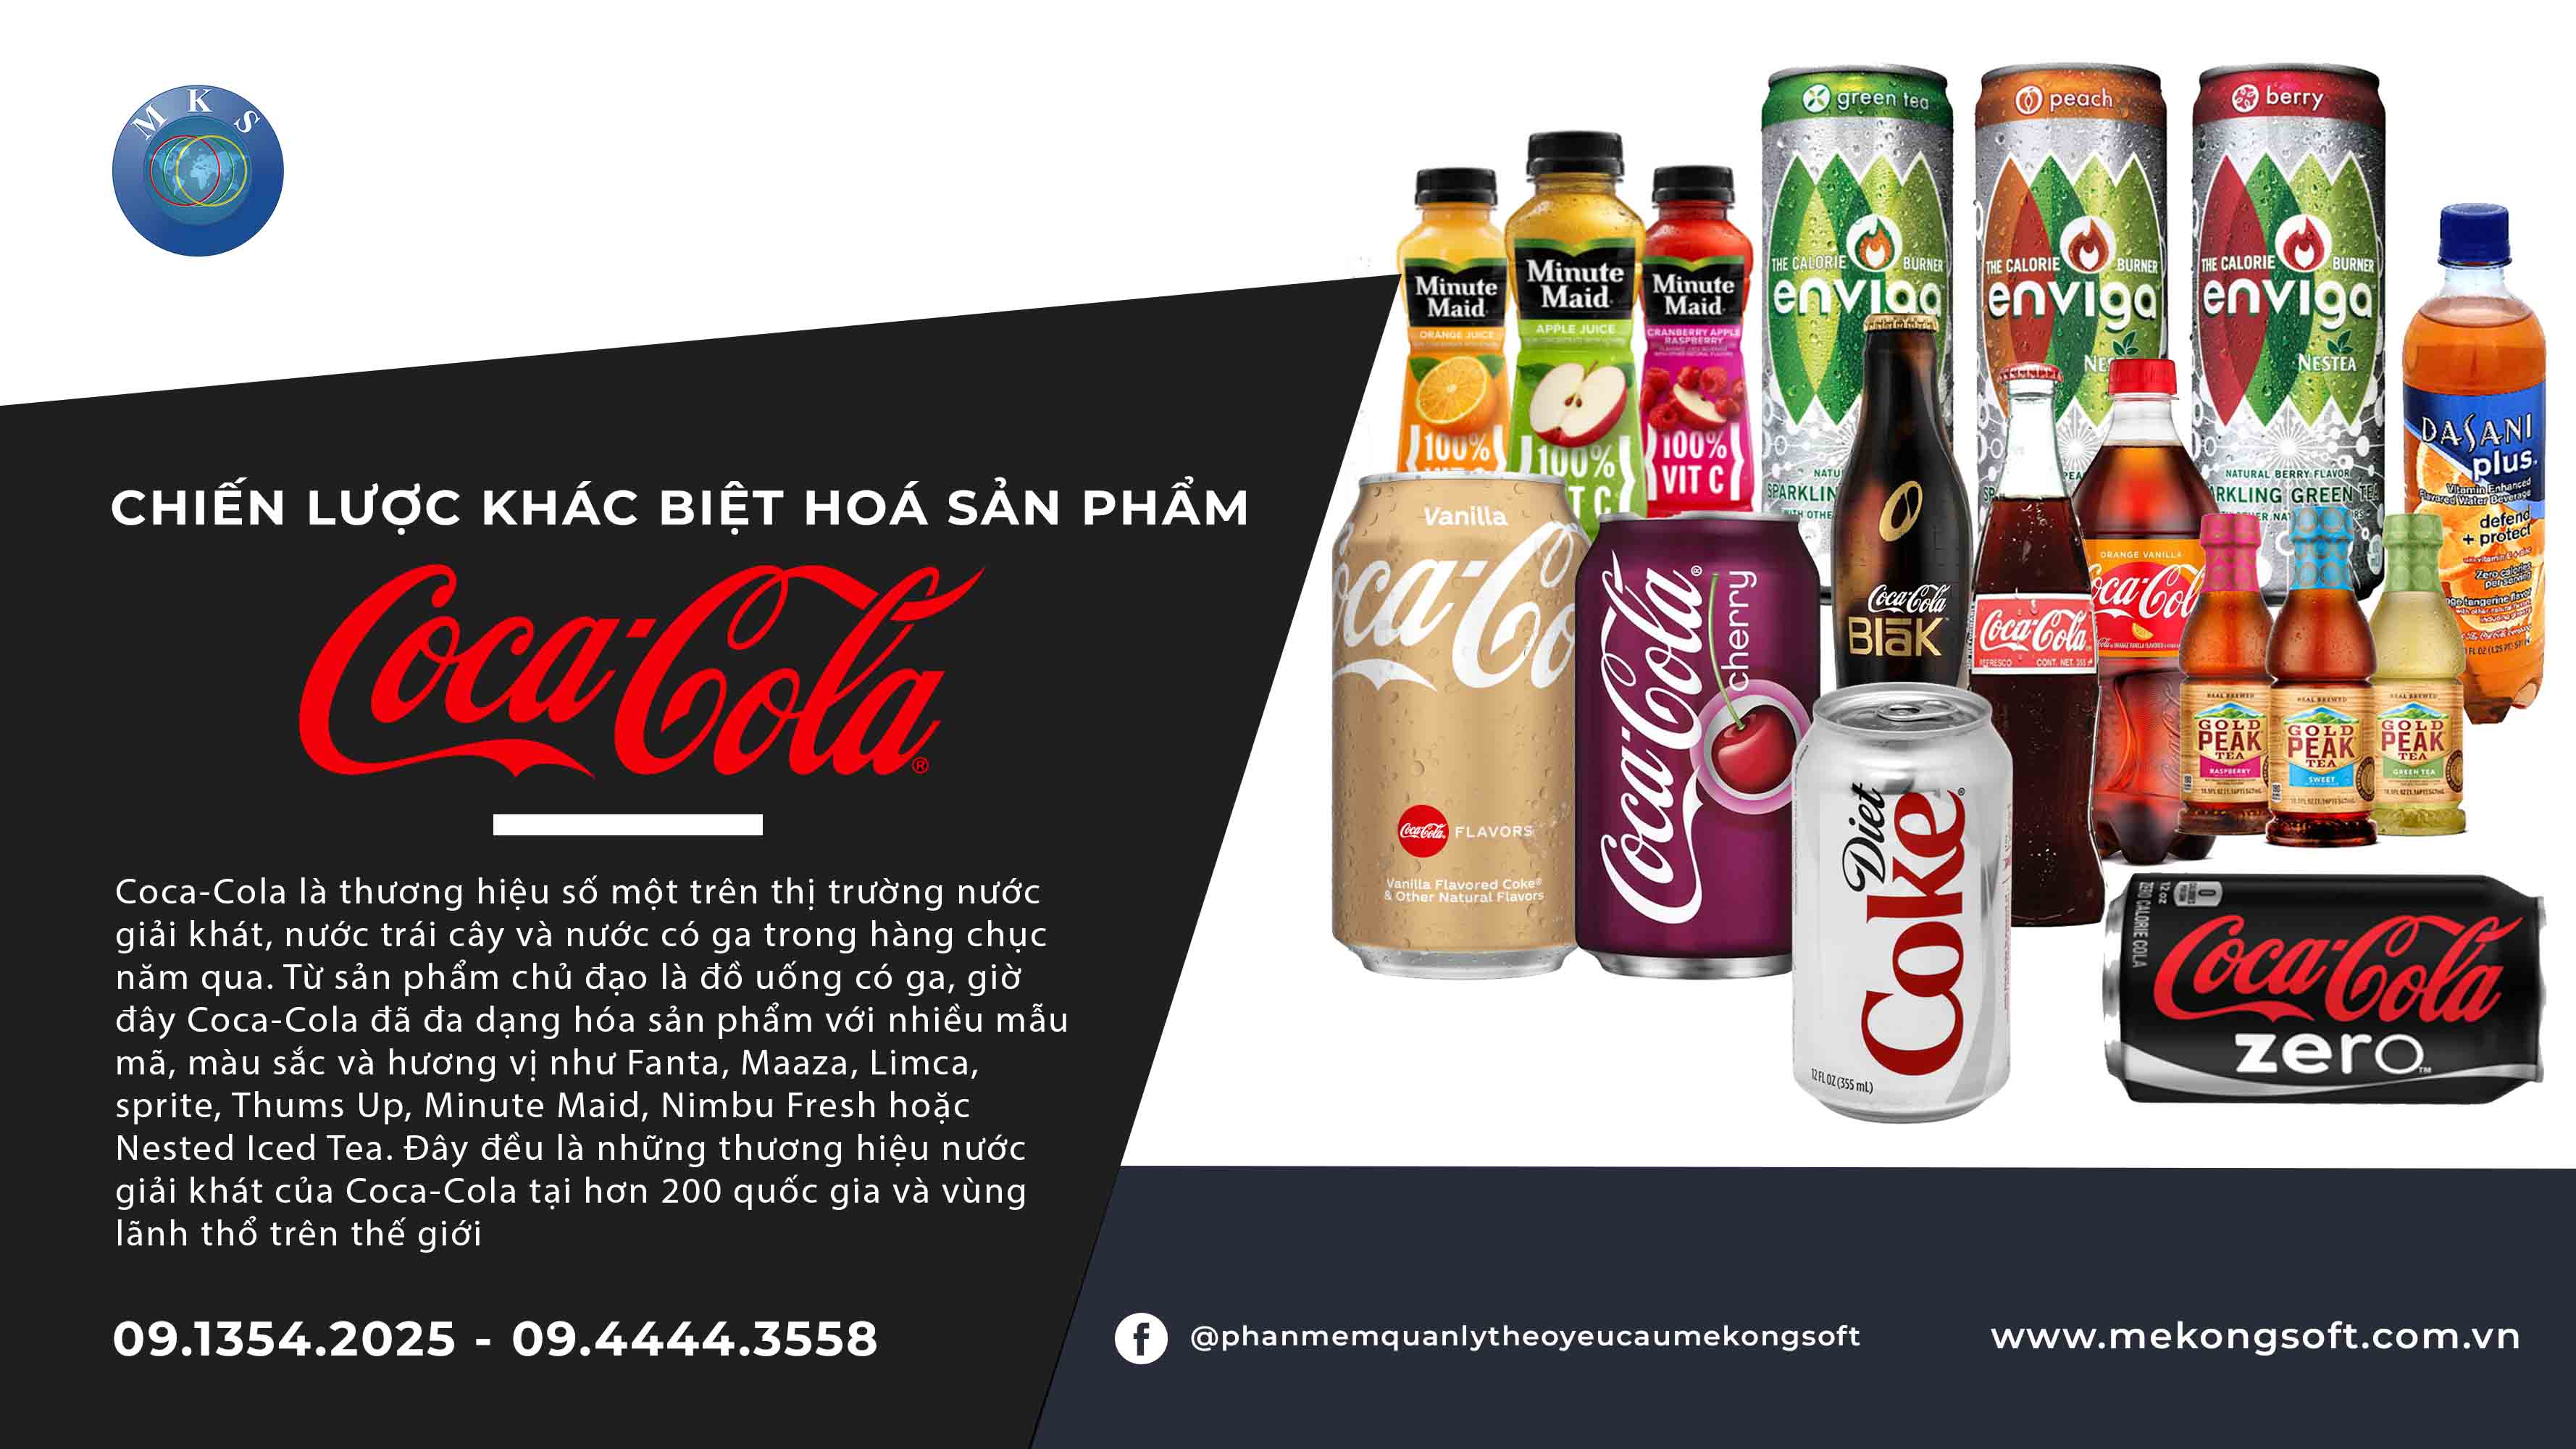 Chiến lược khác biệt hóa sản phẩm của Coca-Cola